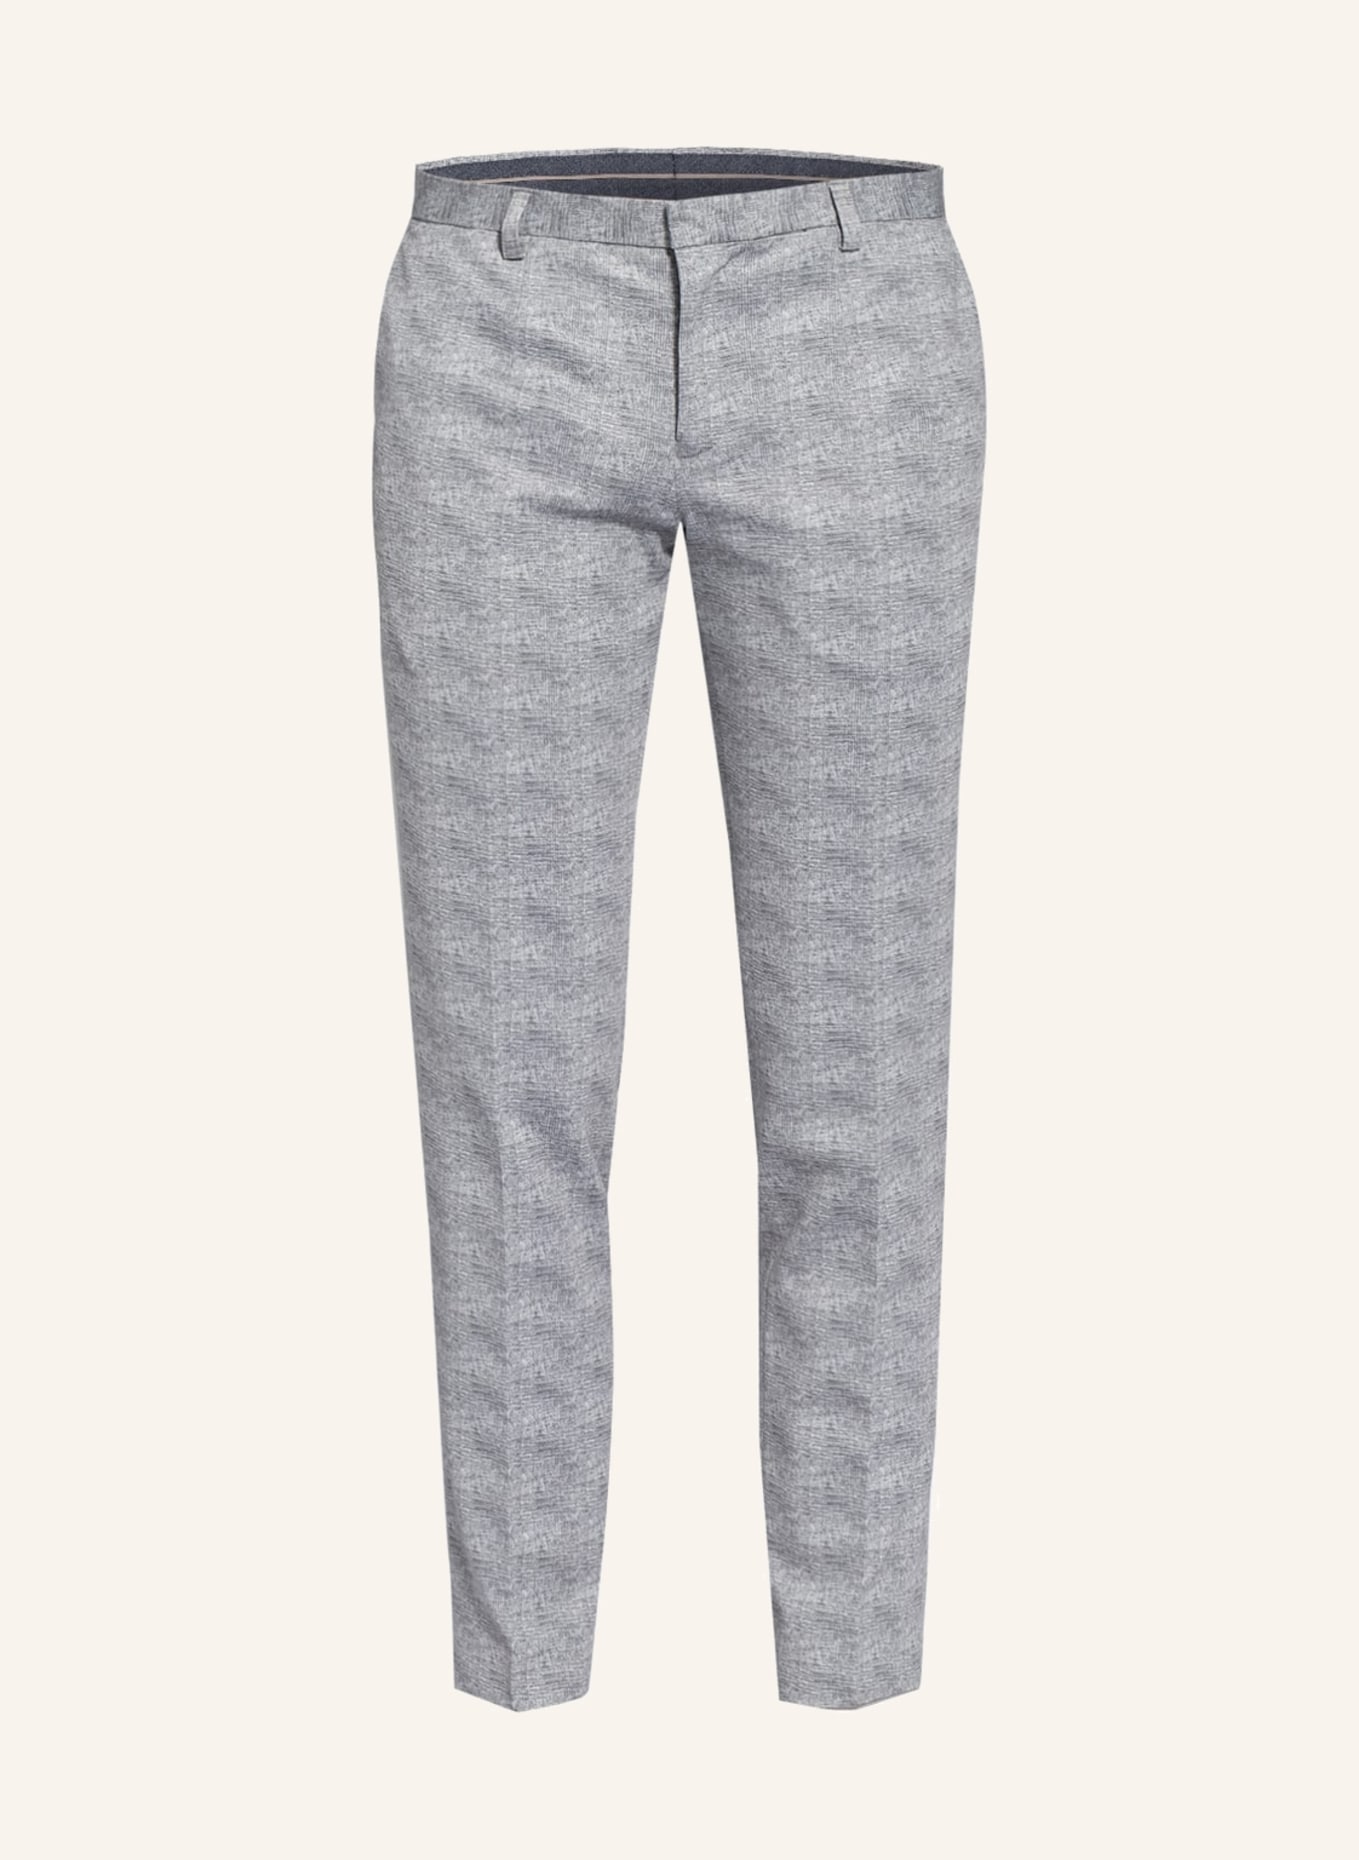 PAUL Suit trousers slim fit, Color: 330 GRAU (Image 1)